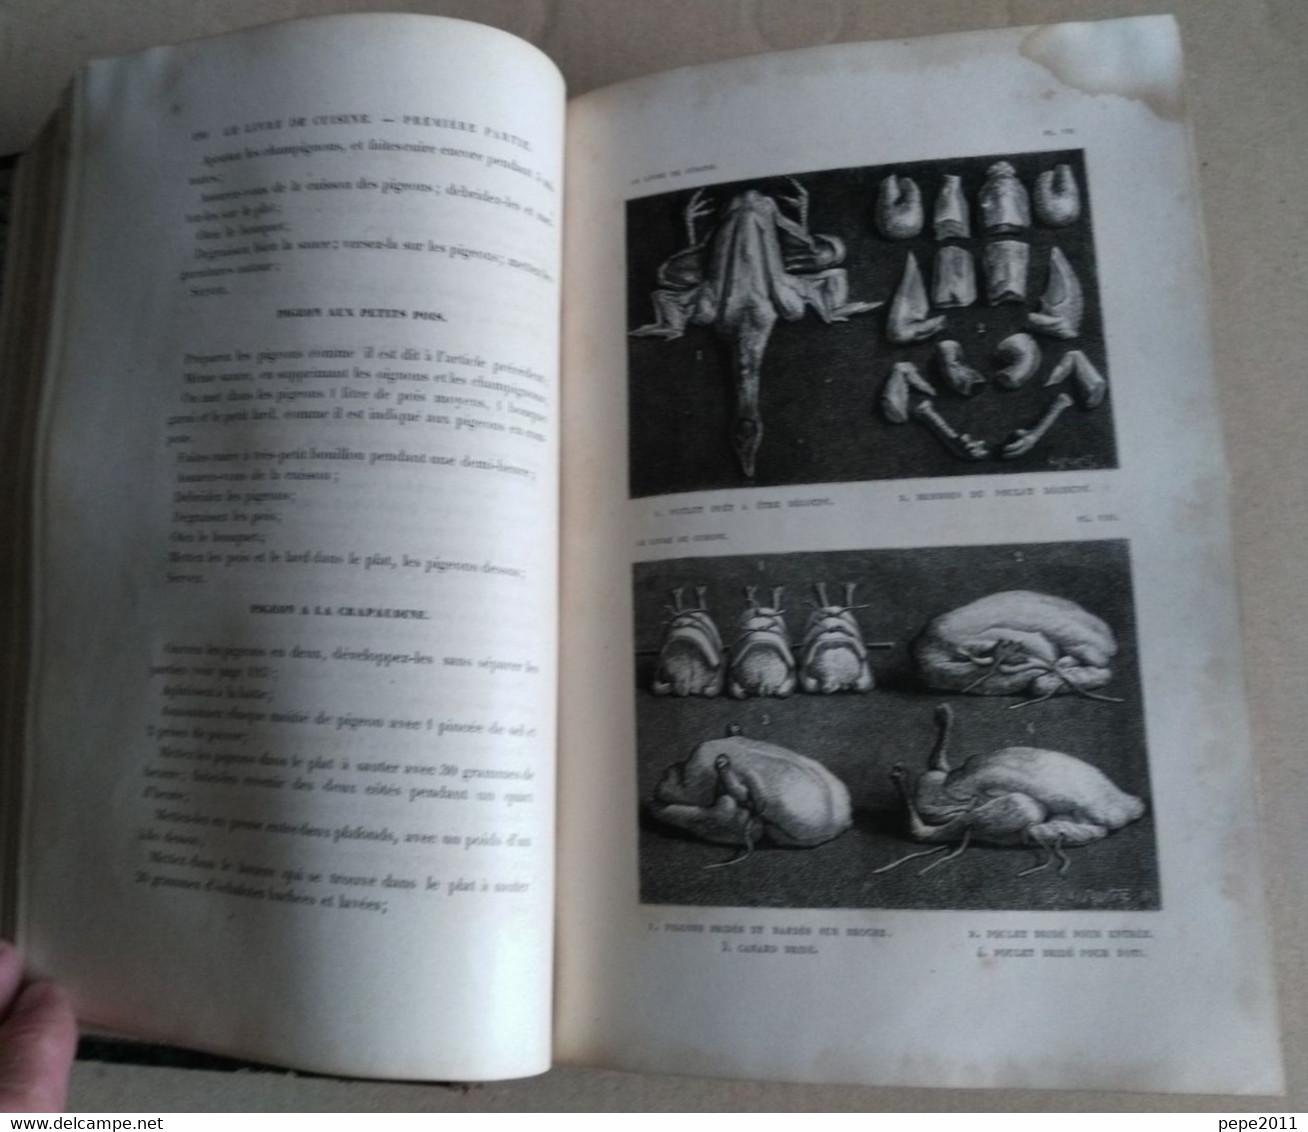 GASTRONOMIE LE LIVRE DE CUISINE Jules GOUFFE - Cuisine Ménage et Grande Cuisine - Hachette 1877